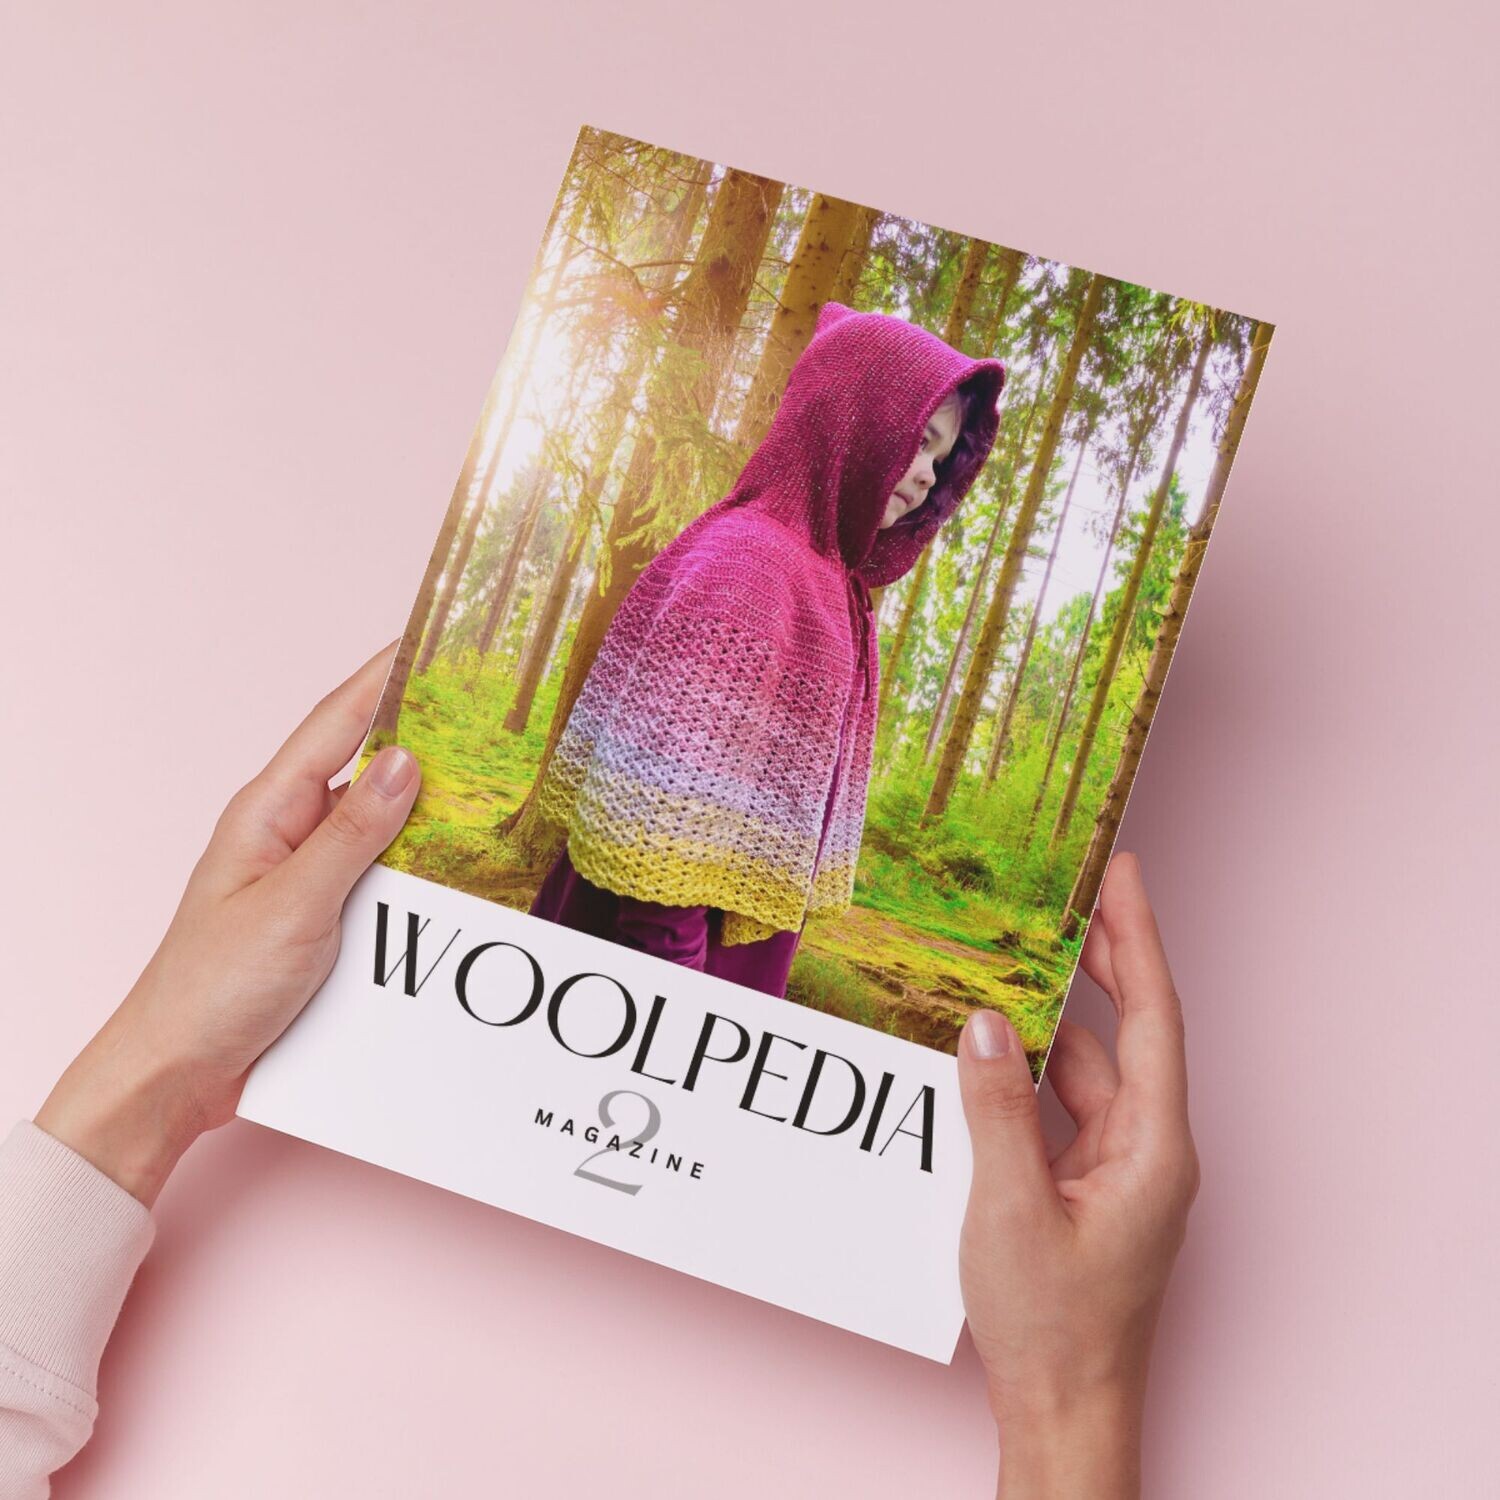 Woolpedia Magazine 2